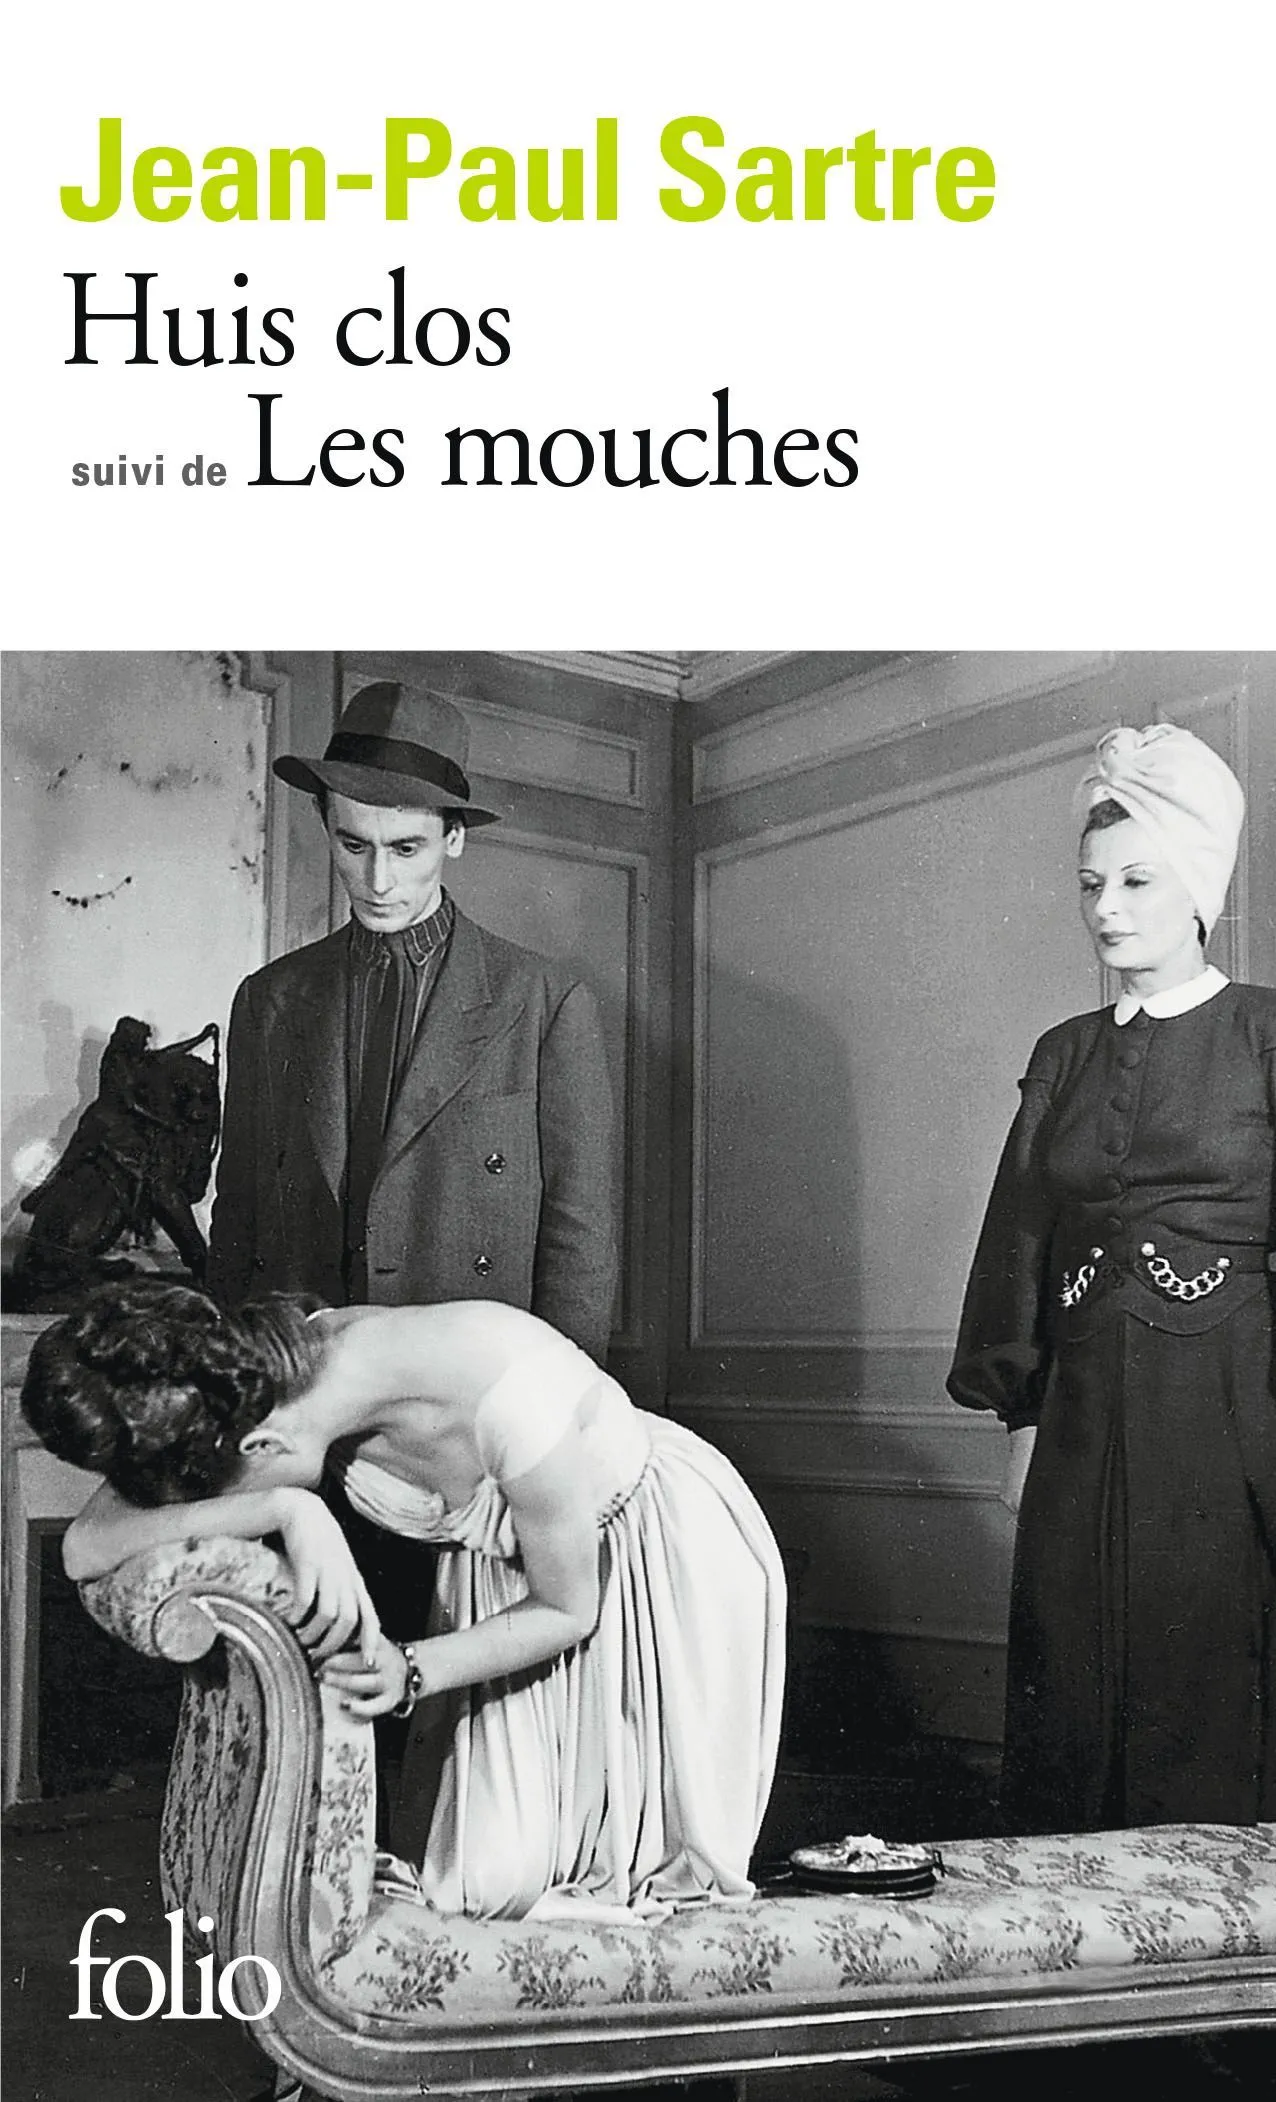 Jean-Paul Sartre, Huis clos, suivi de Les mouches, 1944, Éditions Gallimard, coll. Folio, 1976.